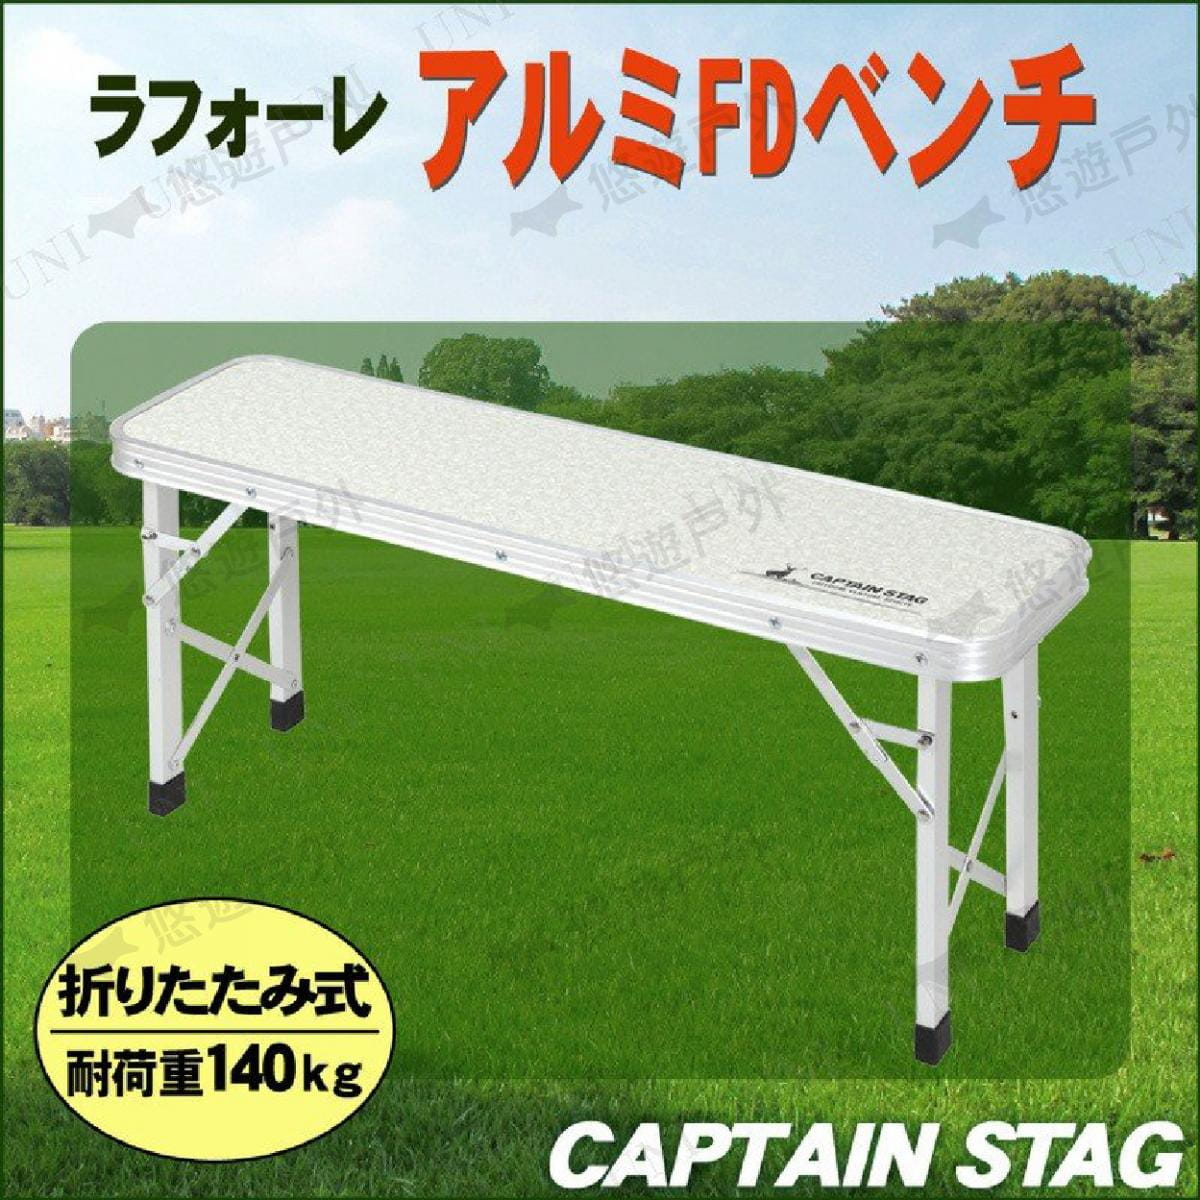 【日本鹿牌】 鋁製FD工作桌 UC-1604 摺疊 便攜椅 長凳 釣魚 居家 野餐 悠遊戶外 3